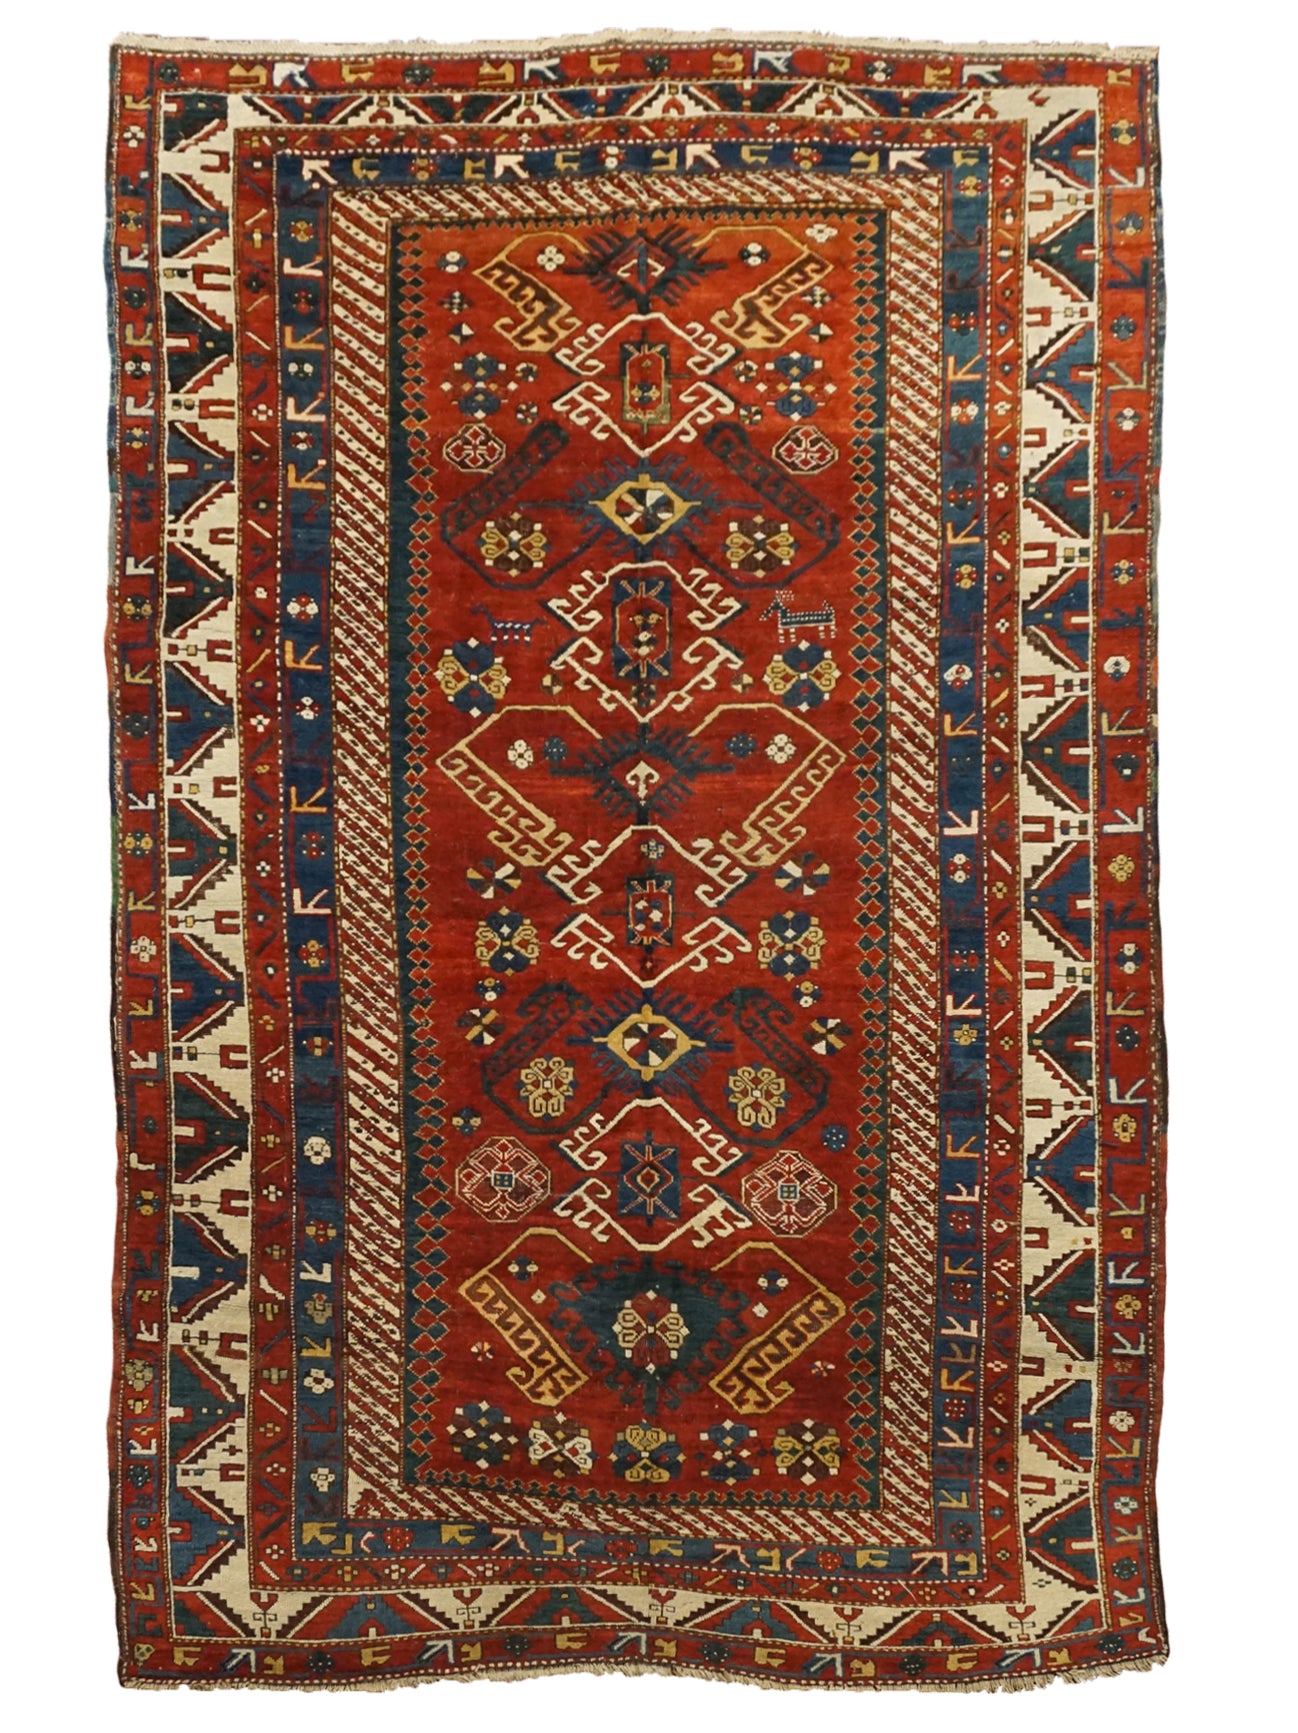 6X9 Antique Caucasus Kazak Rug, circa 1900